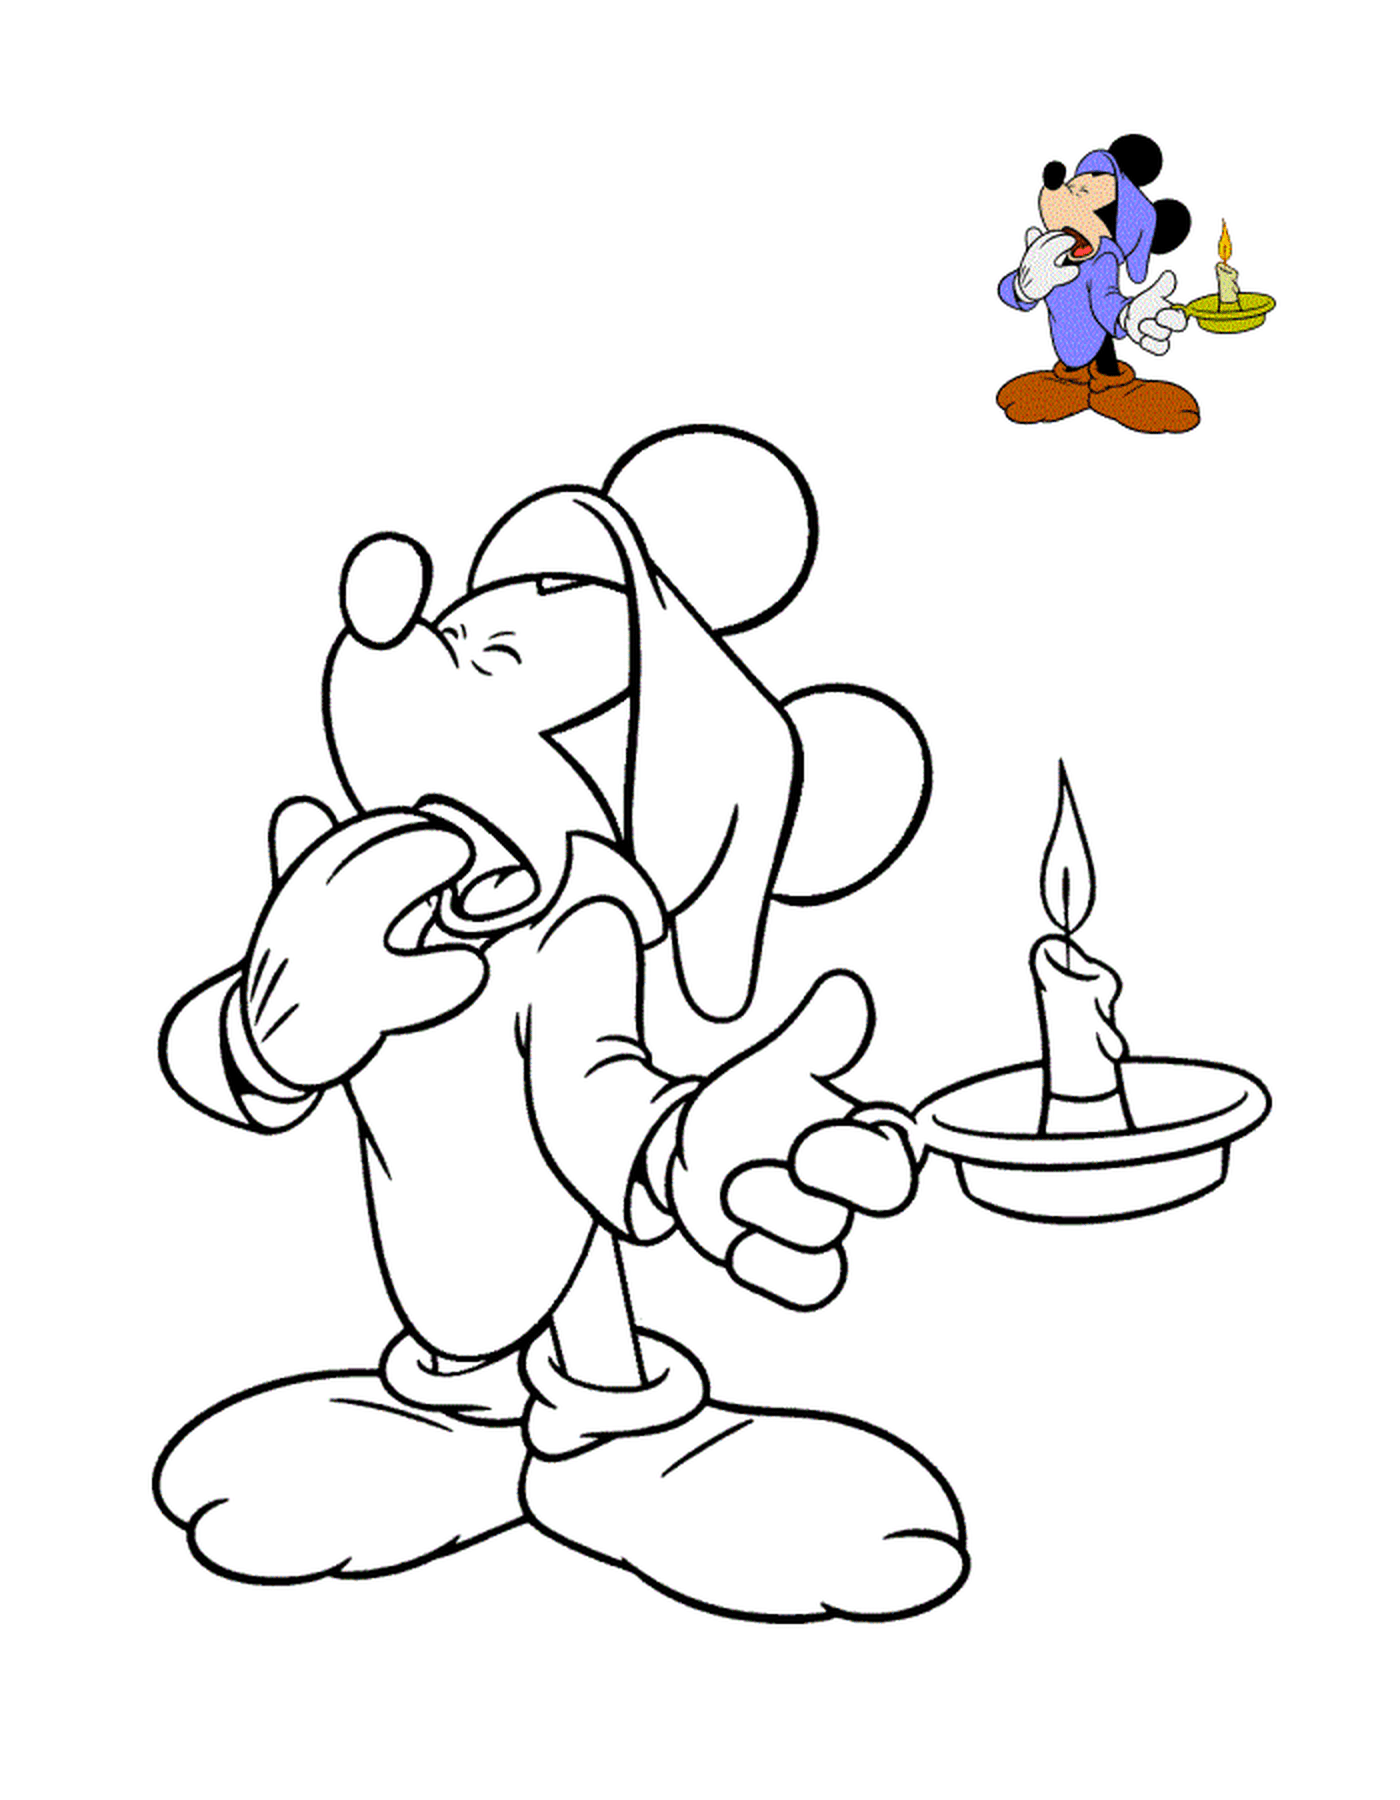  Mickey quer dormir, segurando uma vela 